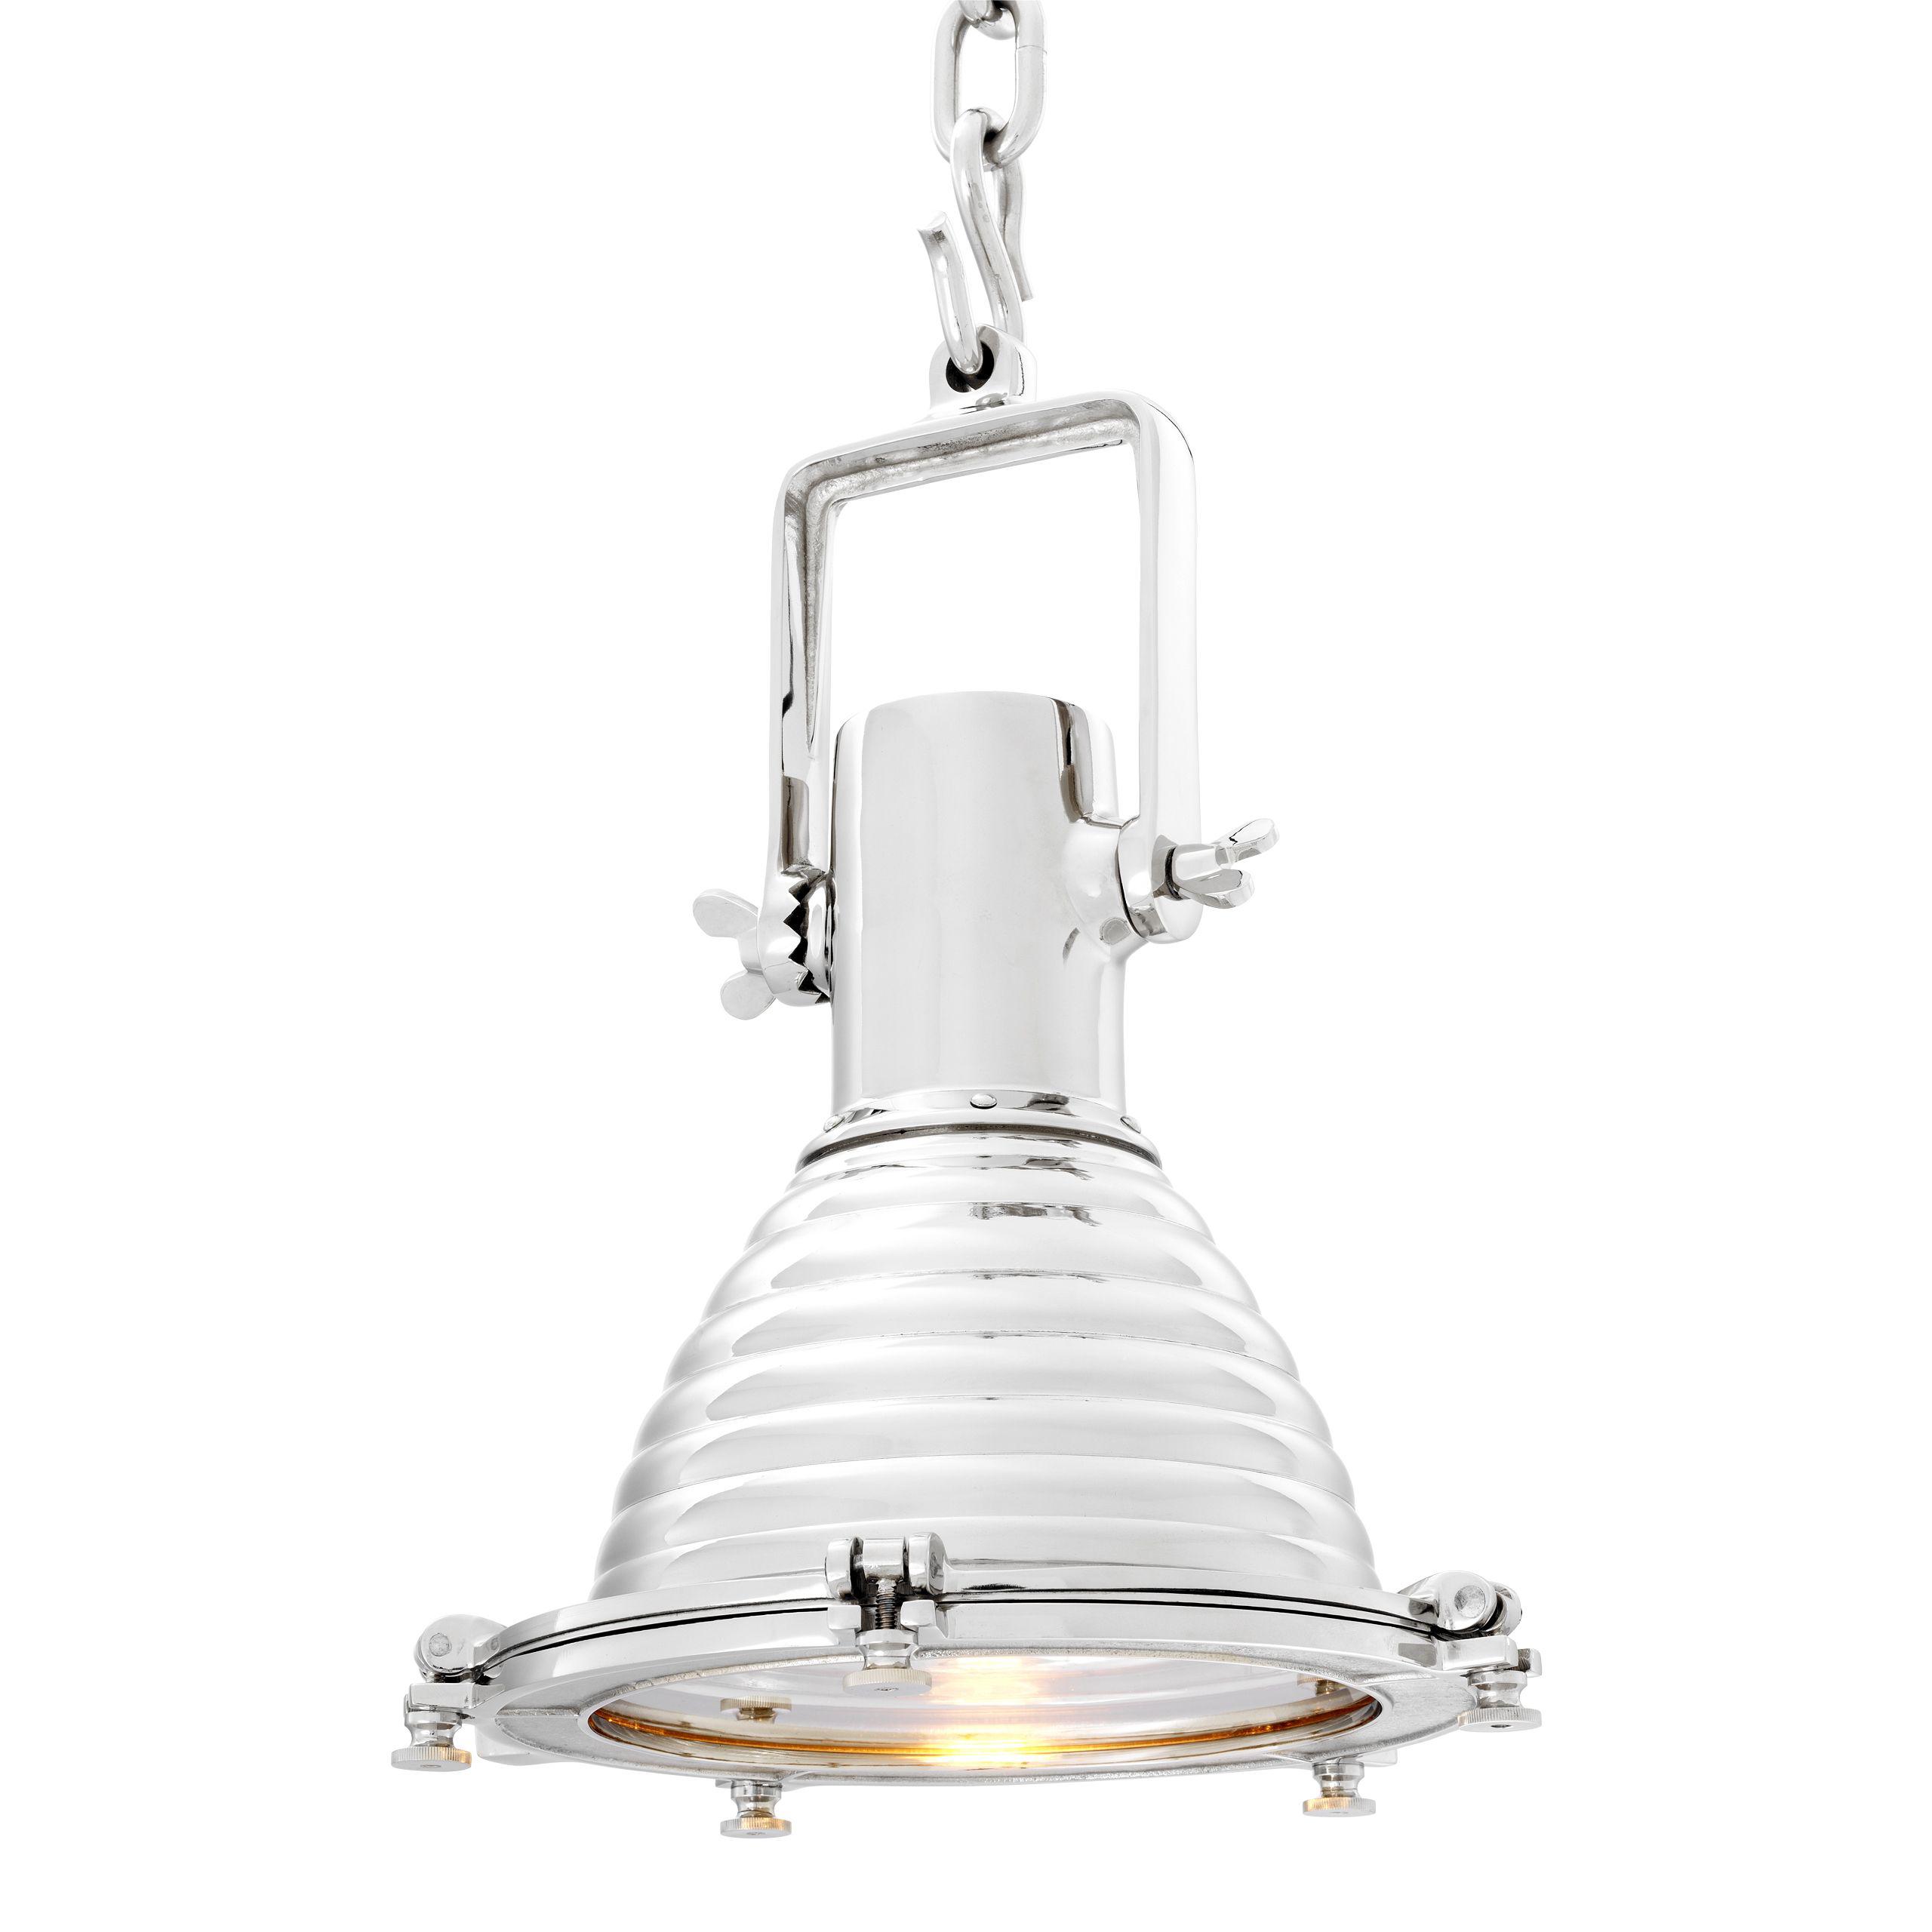 Купить Подвесной светильник Lamp La Marina в интернет-магазине roooms.ru